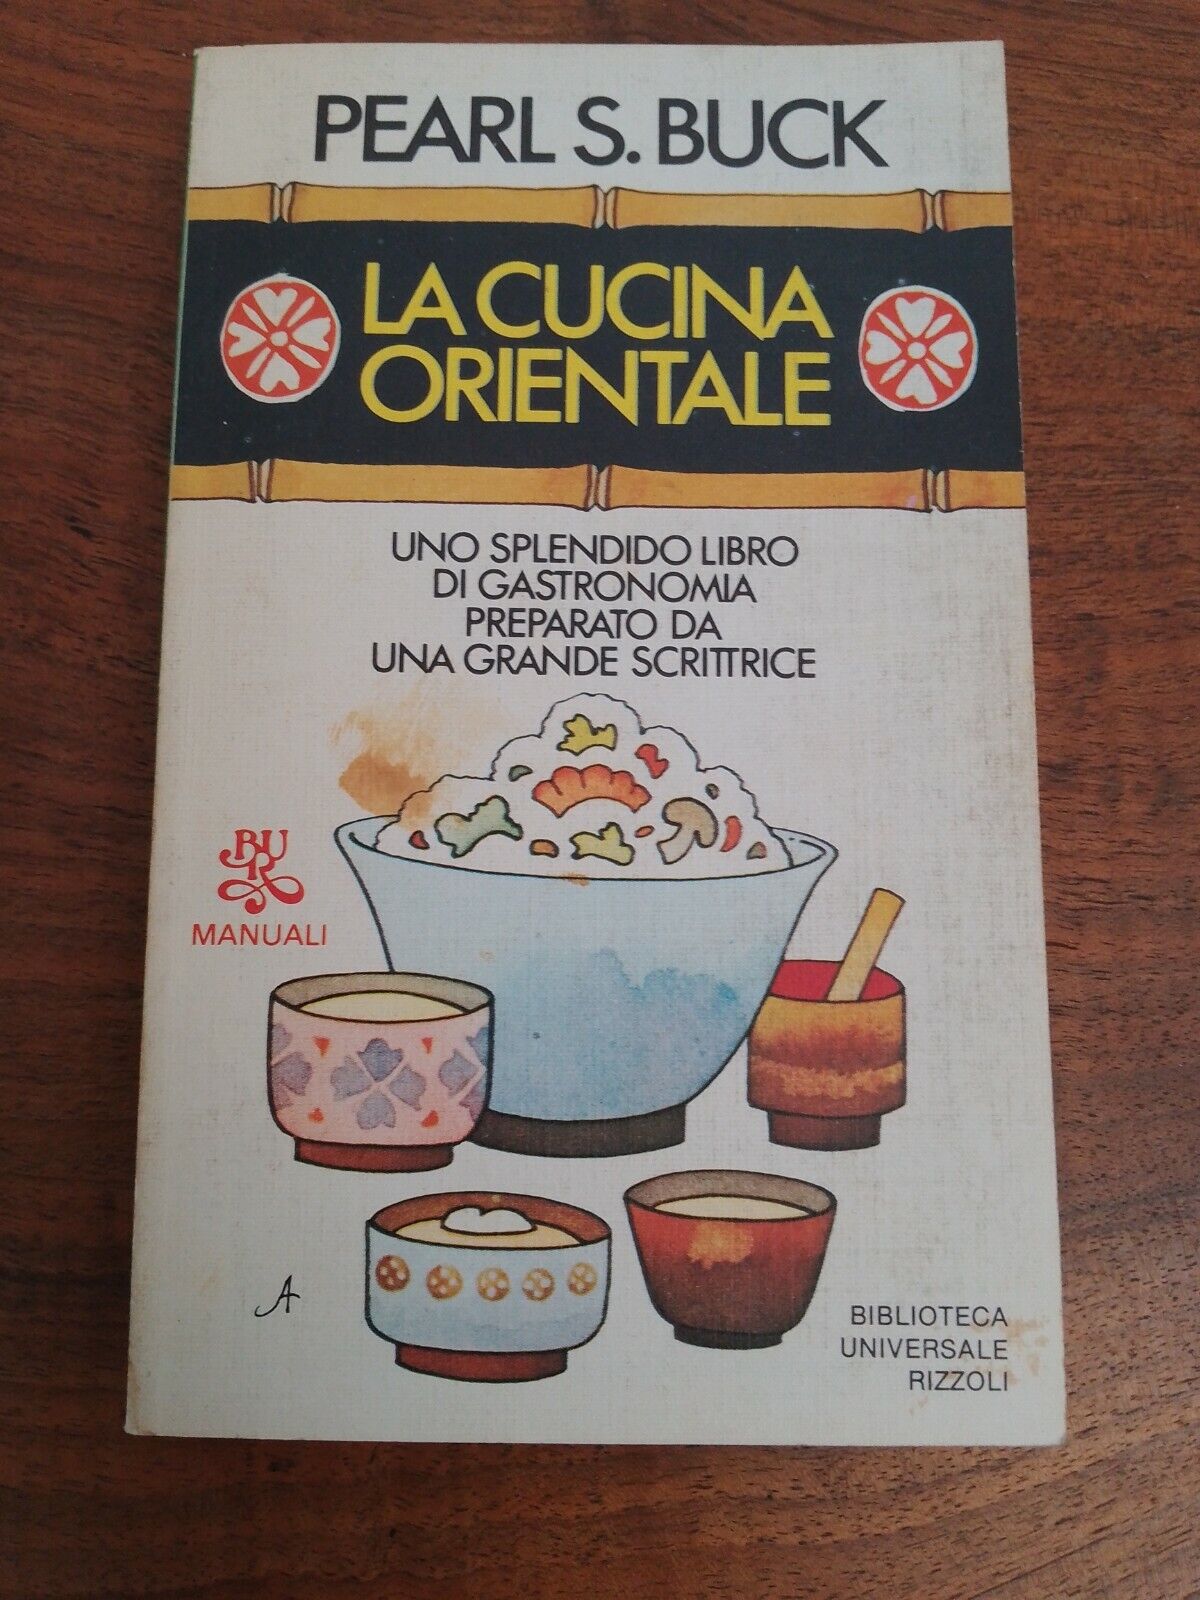 La cucina orientale, P. Buck, Rizzoli, 1983